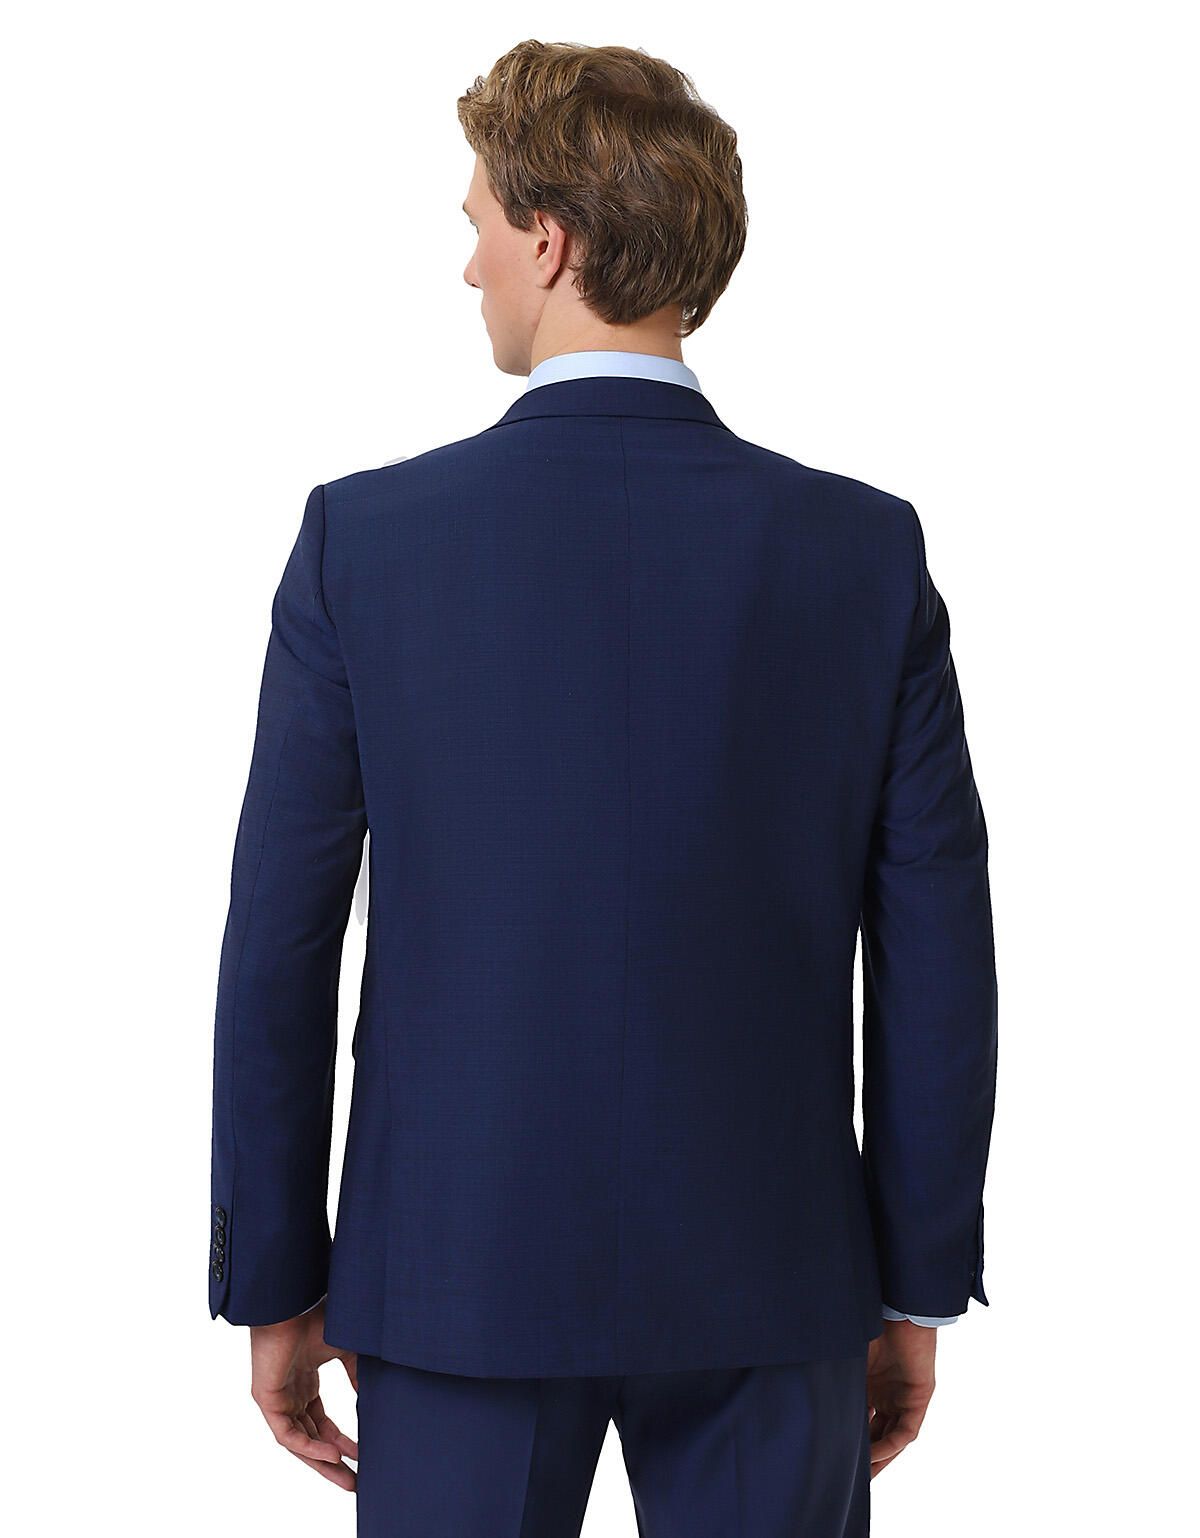 Классический шерстяной пиджак w.Wegener, 2 шлицы | купить в интернет-магазине Olymp-Men